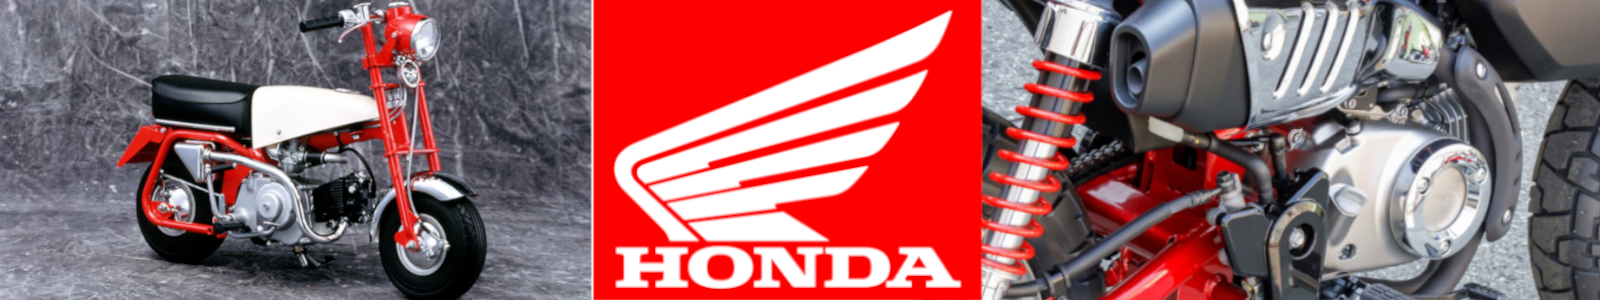 Honda motorcycle parts